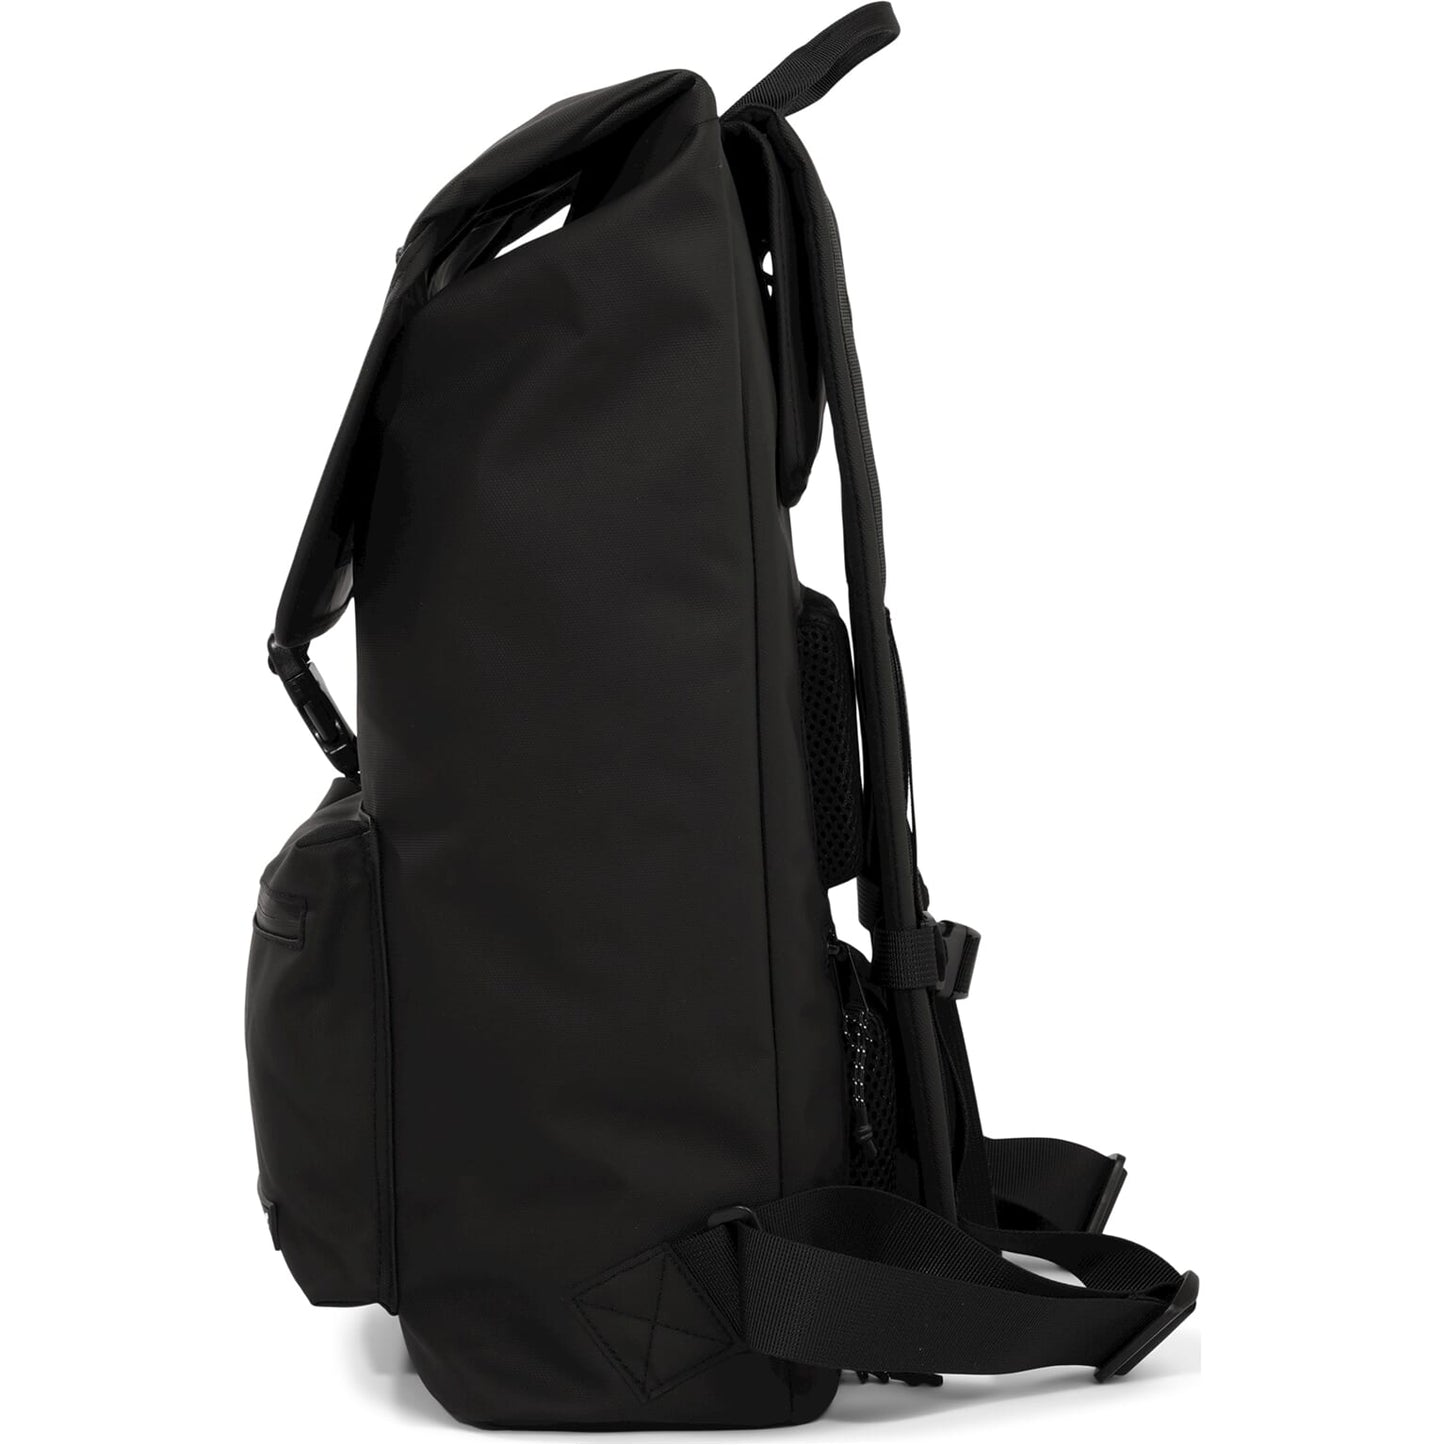 Backpack della borsa per biciclette da carico urbanproof -heart.